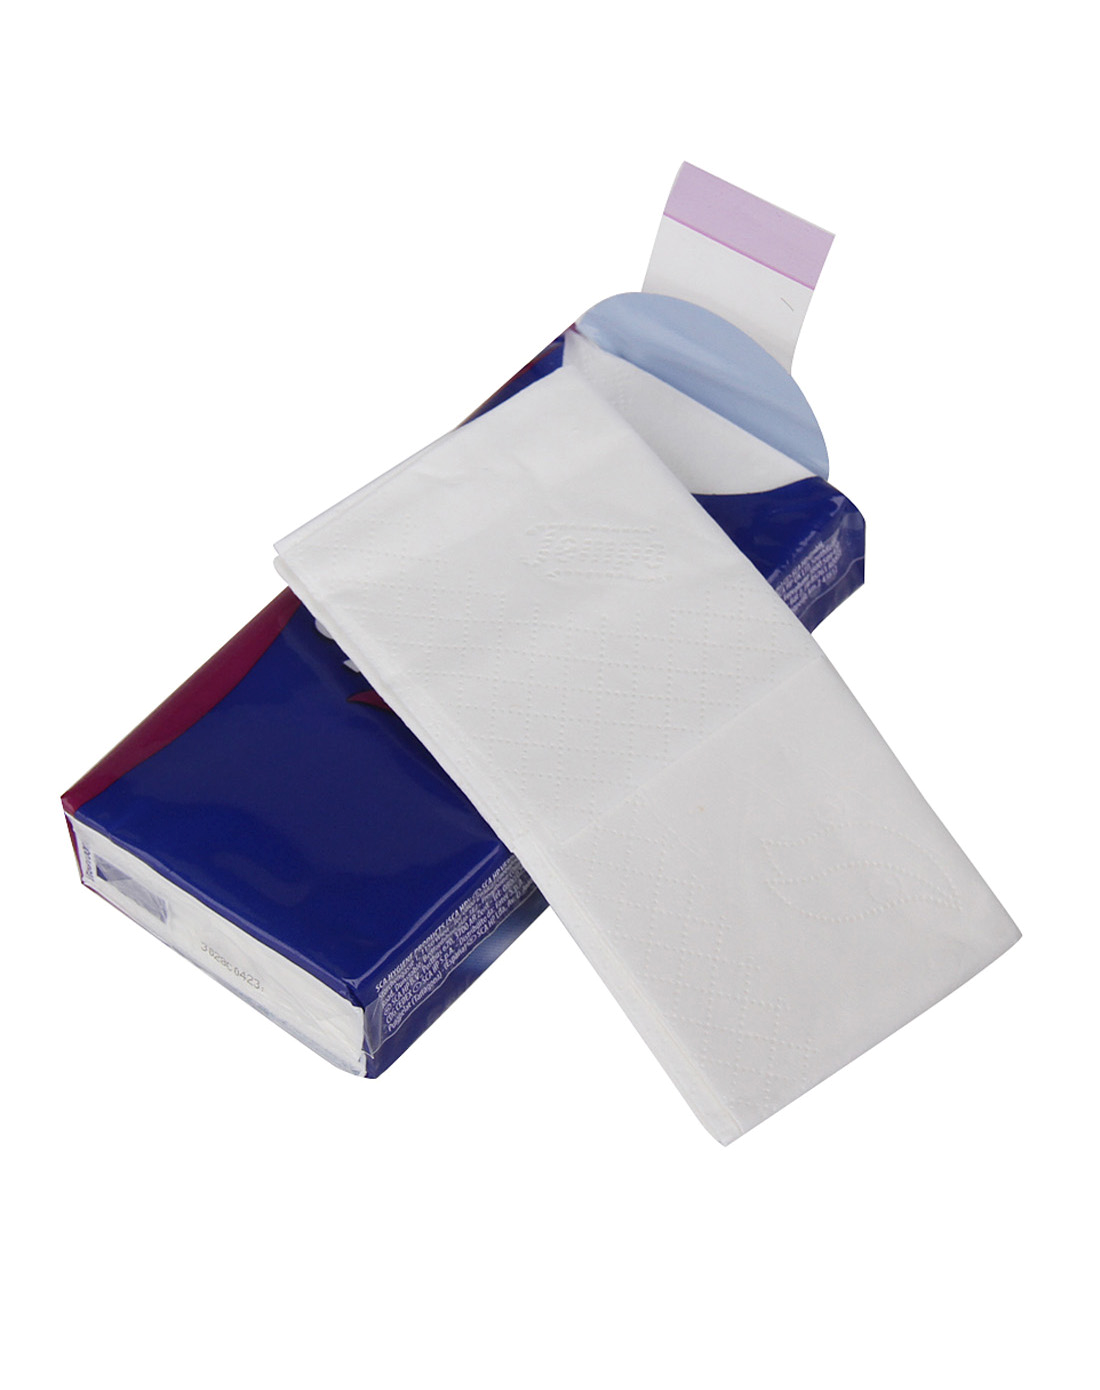 Платки бумажные носовые Veiro 2-слойные. Одноразовые носовые платки. Одноразовые носовые платочки. Упаковка салфеток бумажных.